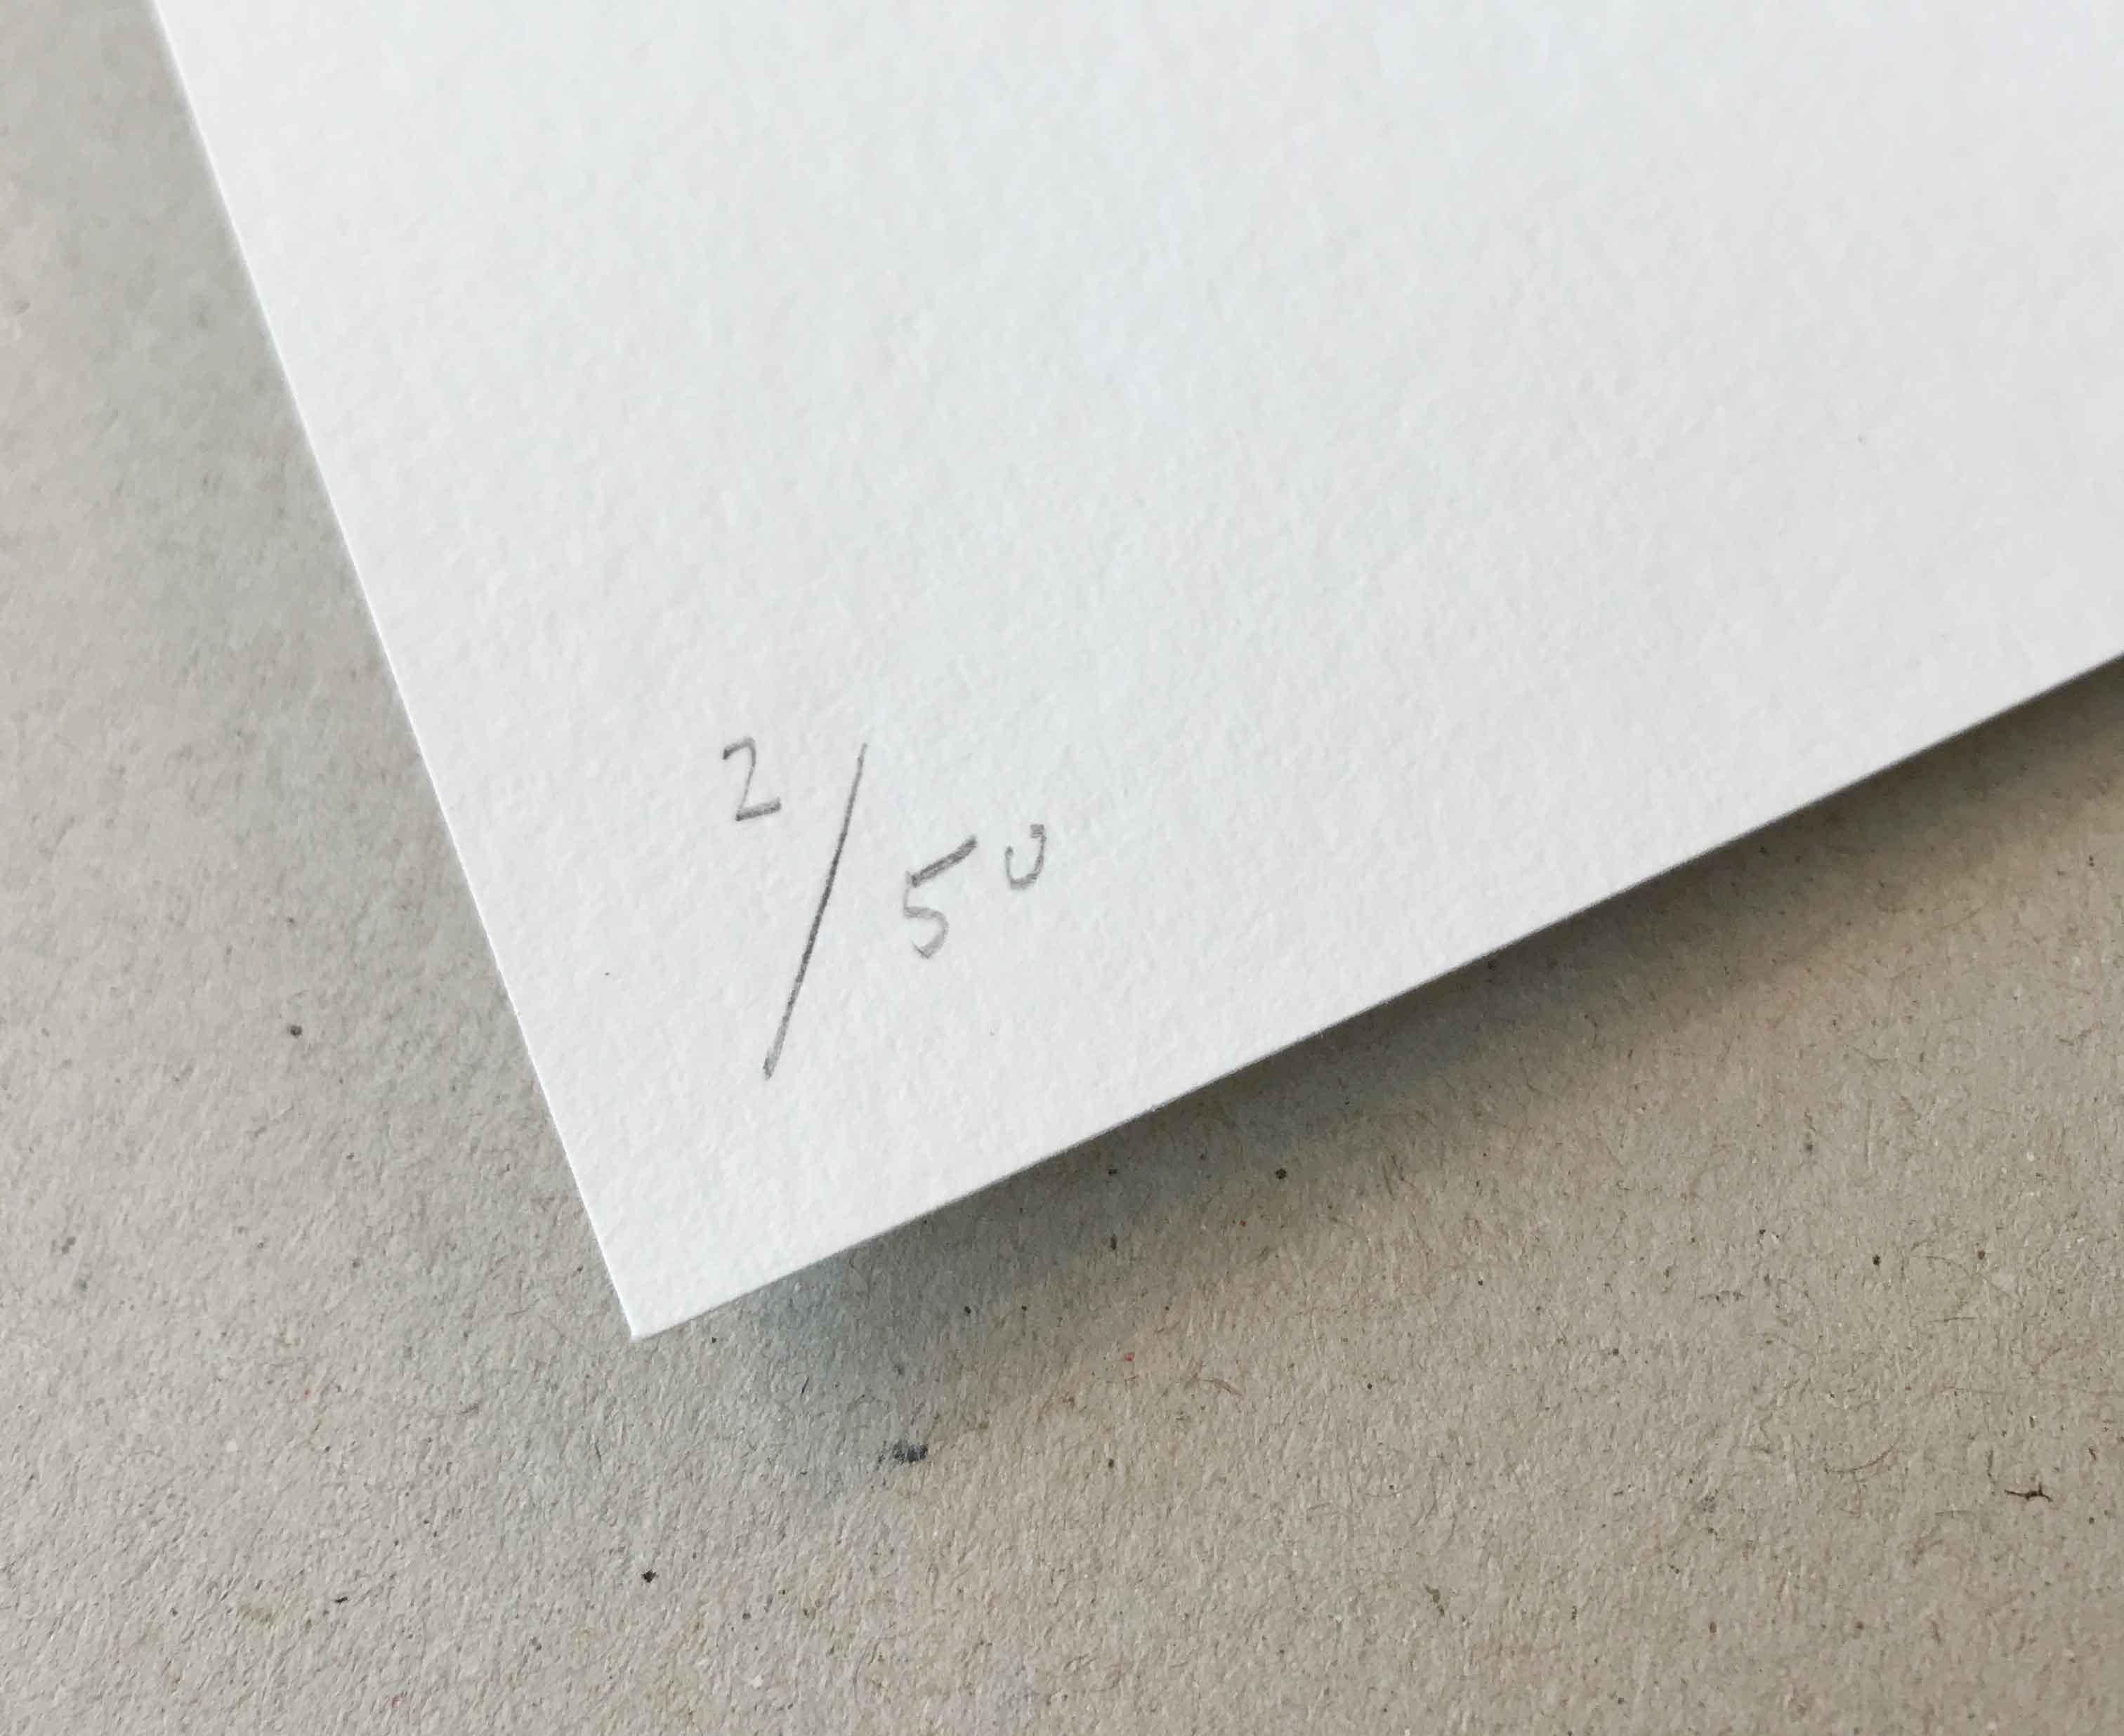 Nicole Lin
Valley-Contemporain, Abstrait, Moderne, Surréaliste
2020

Impression d'art giclée sur papier de gravure allemand. 
Dimensions Hauteur : 717 mm Largeur : 508 mm (papier non encadré)

Signé à la main par l'artiste, et certificat